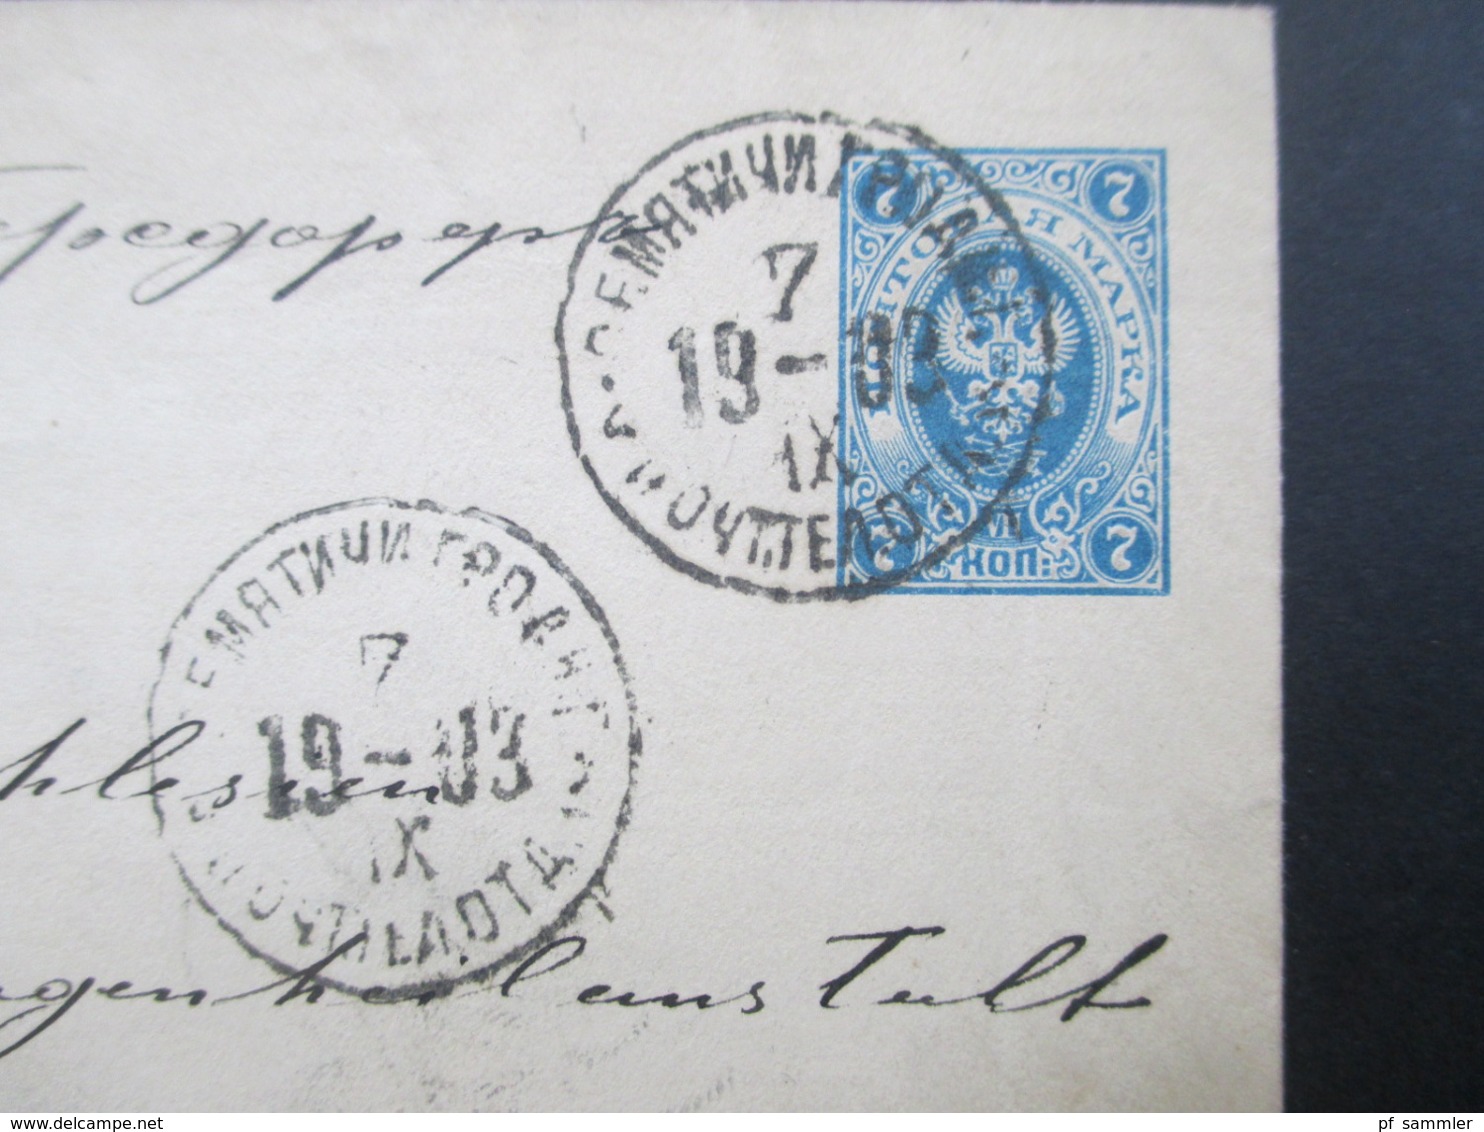 Rußland 1903 GA Umschlag Mit 2 Zusatzfrankaturen / Dreifarbenfrankatur Nach Görbersdorf (Schlesien) Lungenheilanstalt - Lettres & Documents